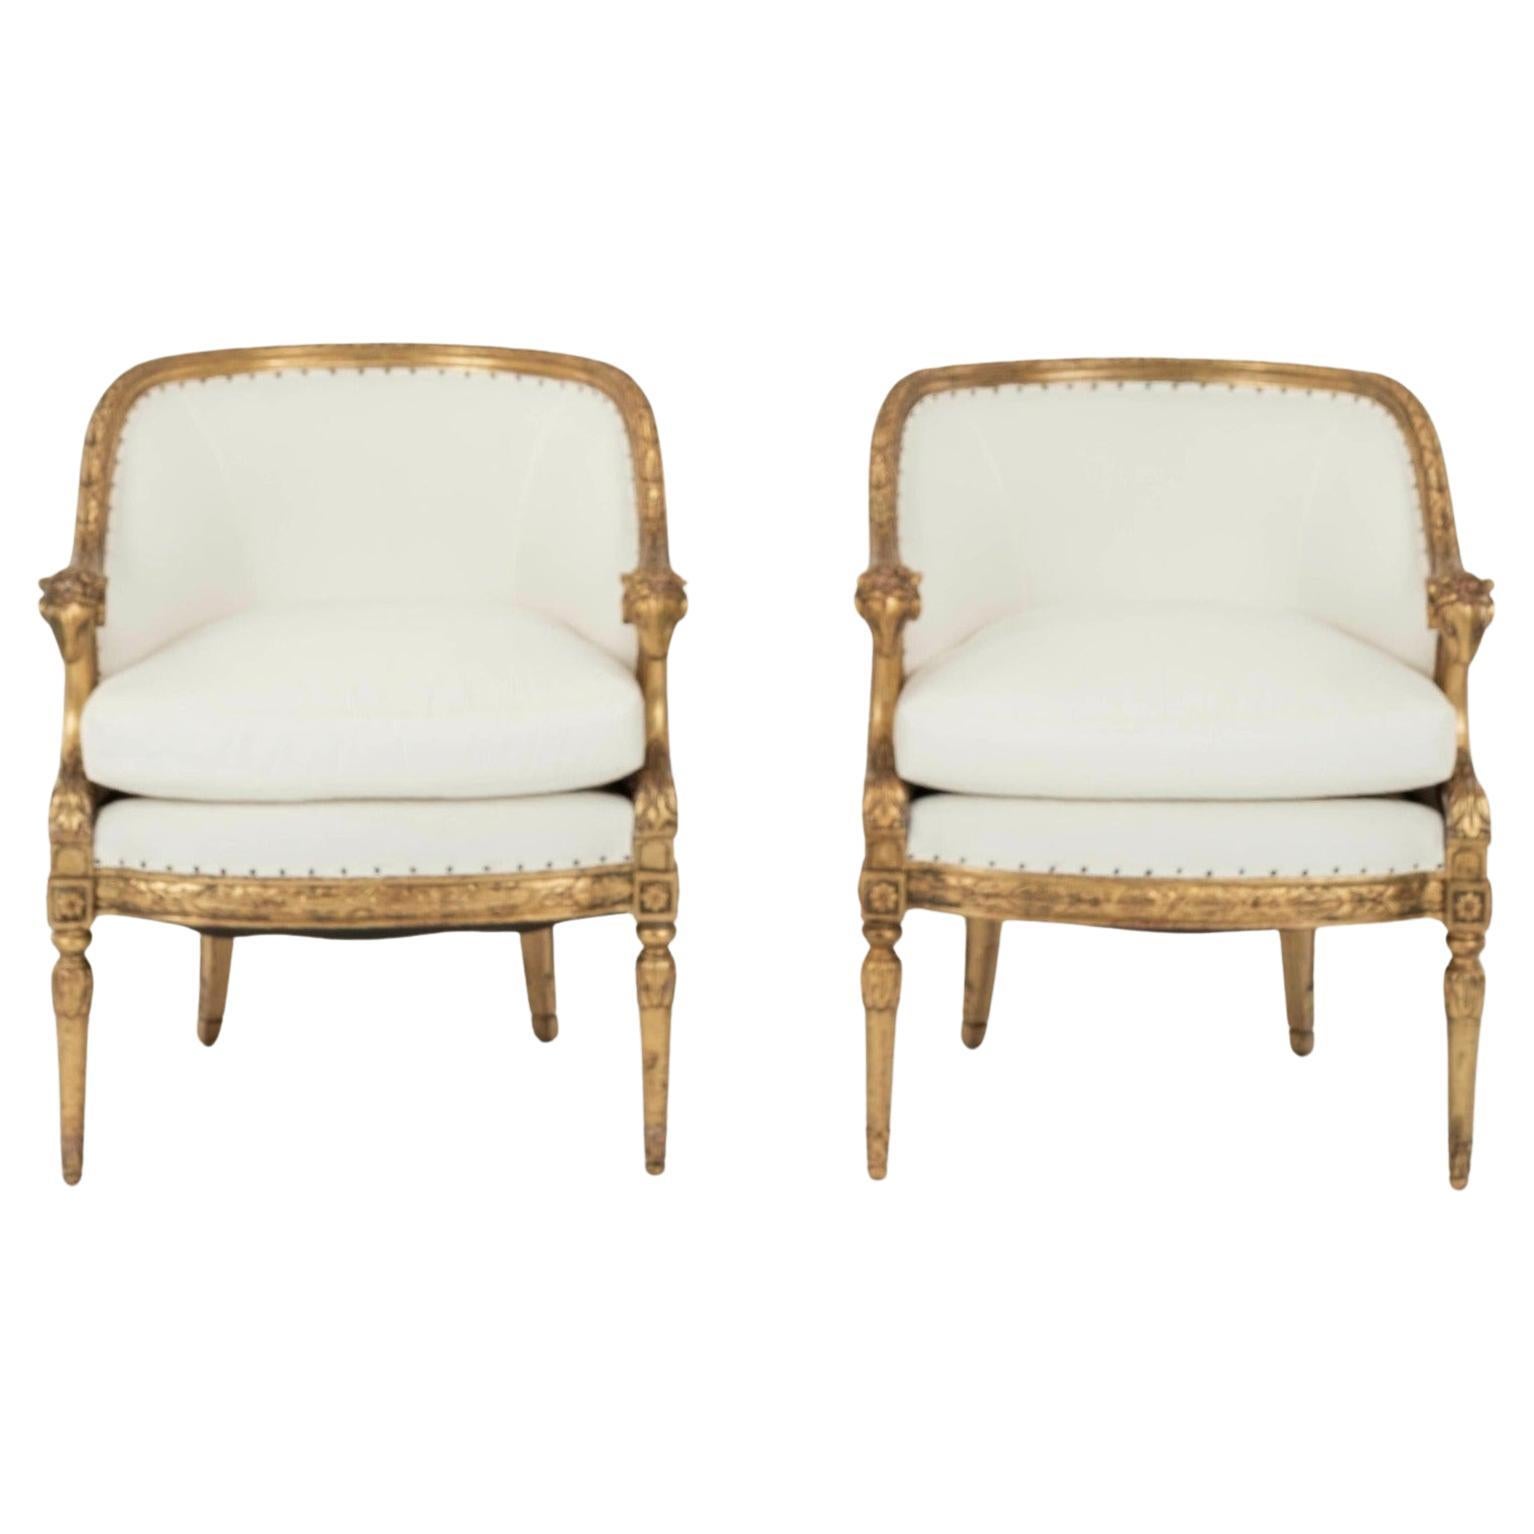 Paire de chaises bergère ou baignoires à têtes de bélier dorées de style Empire du 20e siècle